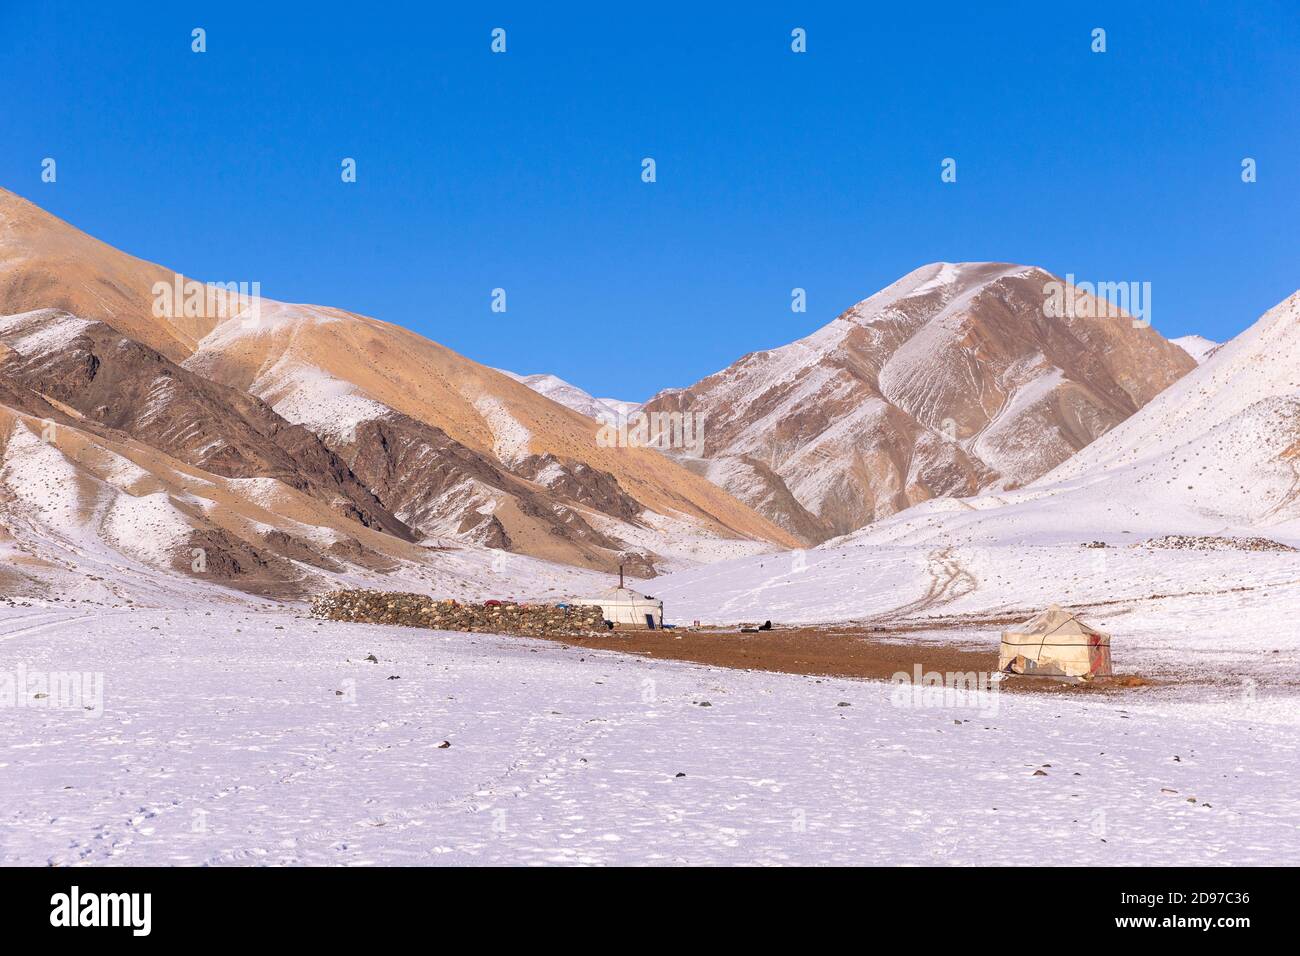 Bergerie, yourte dans la neige, élevage de chèvres et de moutons, vallée avec neige et rochers, montagnes de l'Altaï, Mongolie-Ouest, Mongolie Banque D'Images